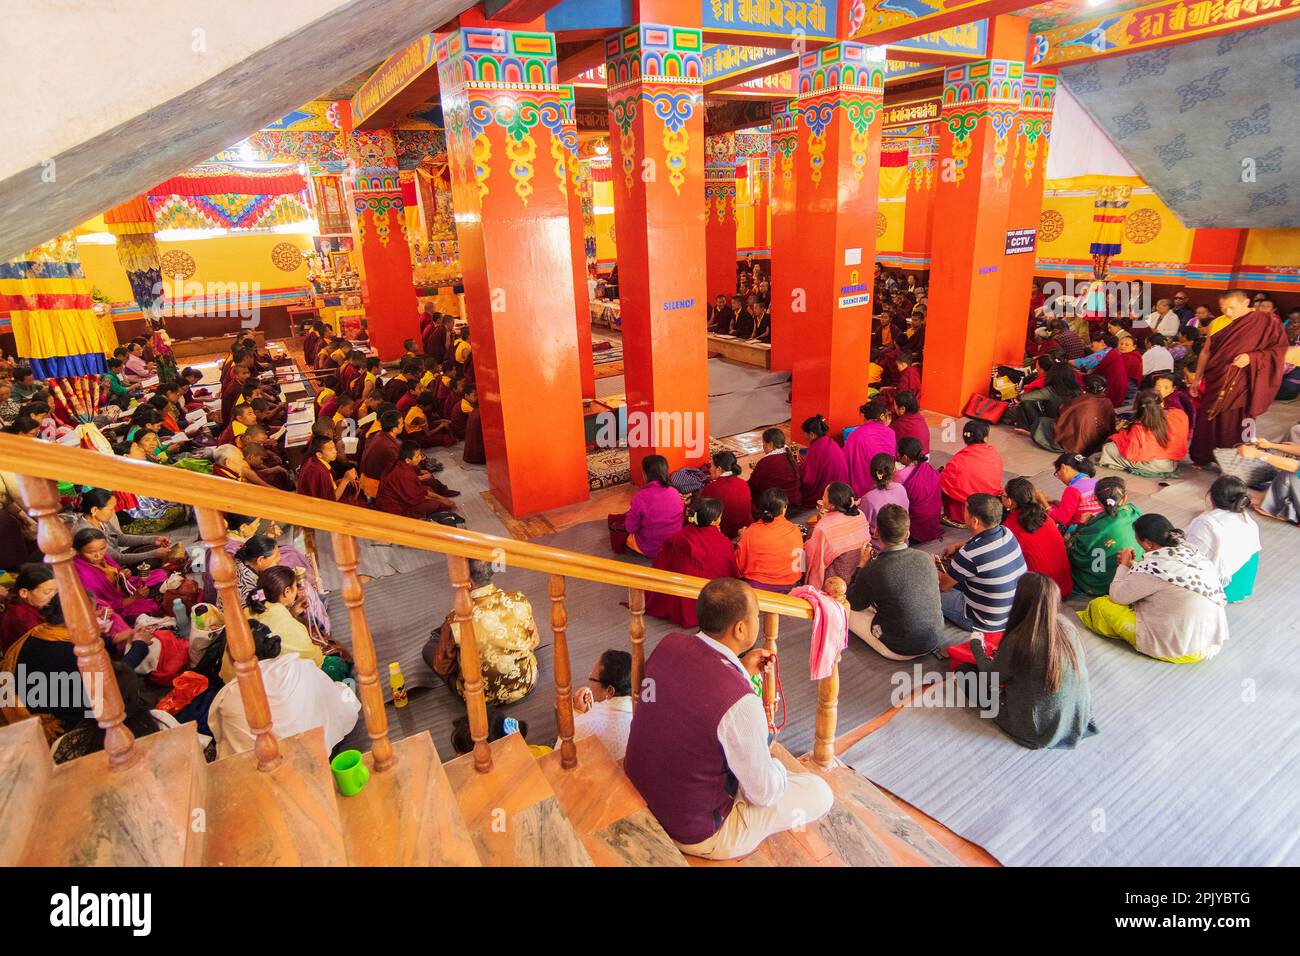 Monastère de Samdruptse, Ravangla, Sikkim, Inde - 20 octobre 2016 : des dévots Buddists priant à l'intérieur de la salle de prière du monastère de Samdruptse. Banque D'Images